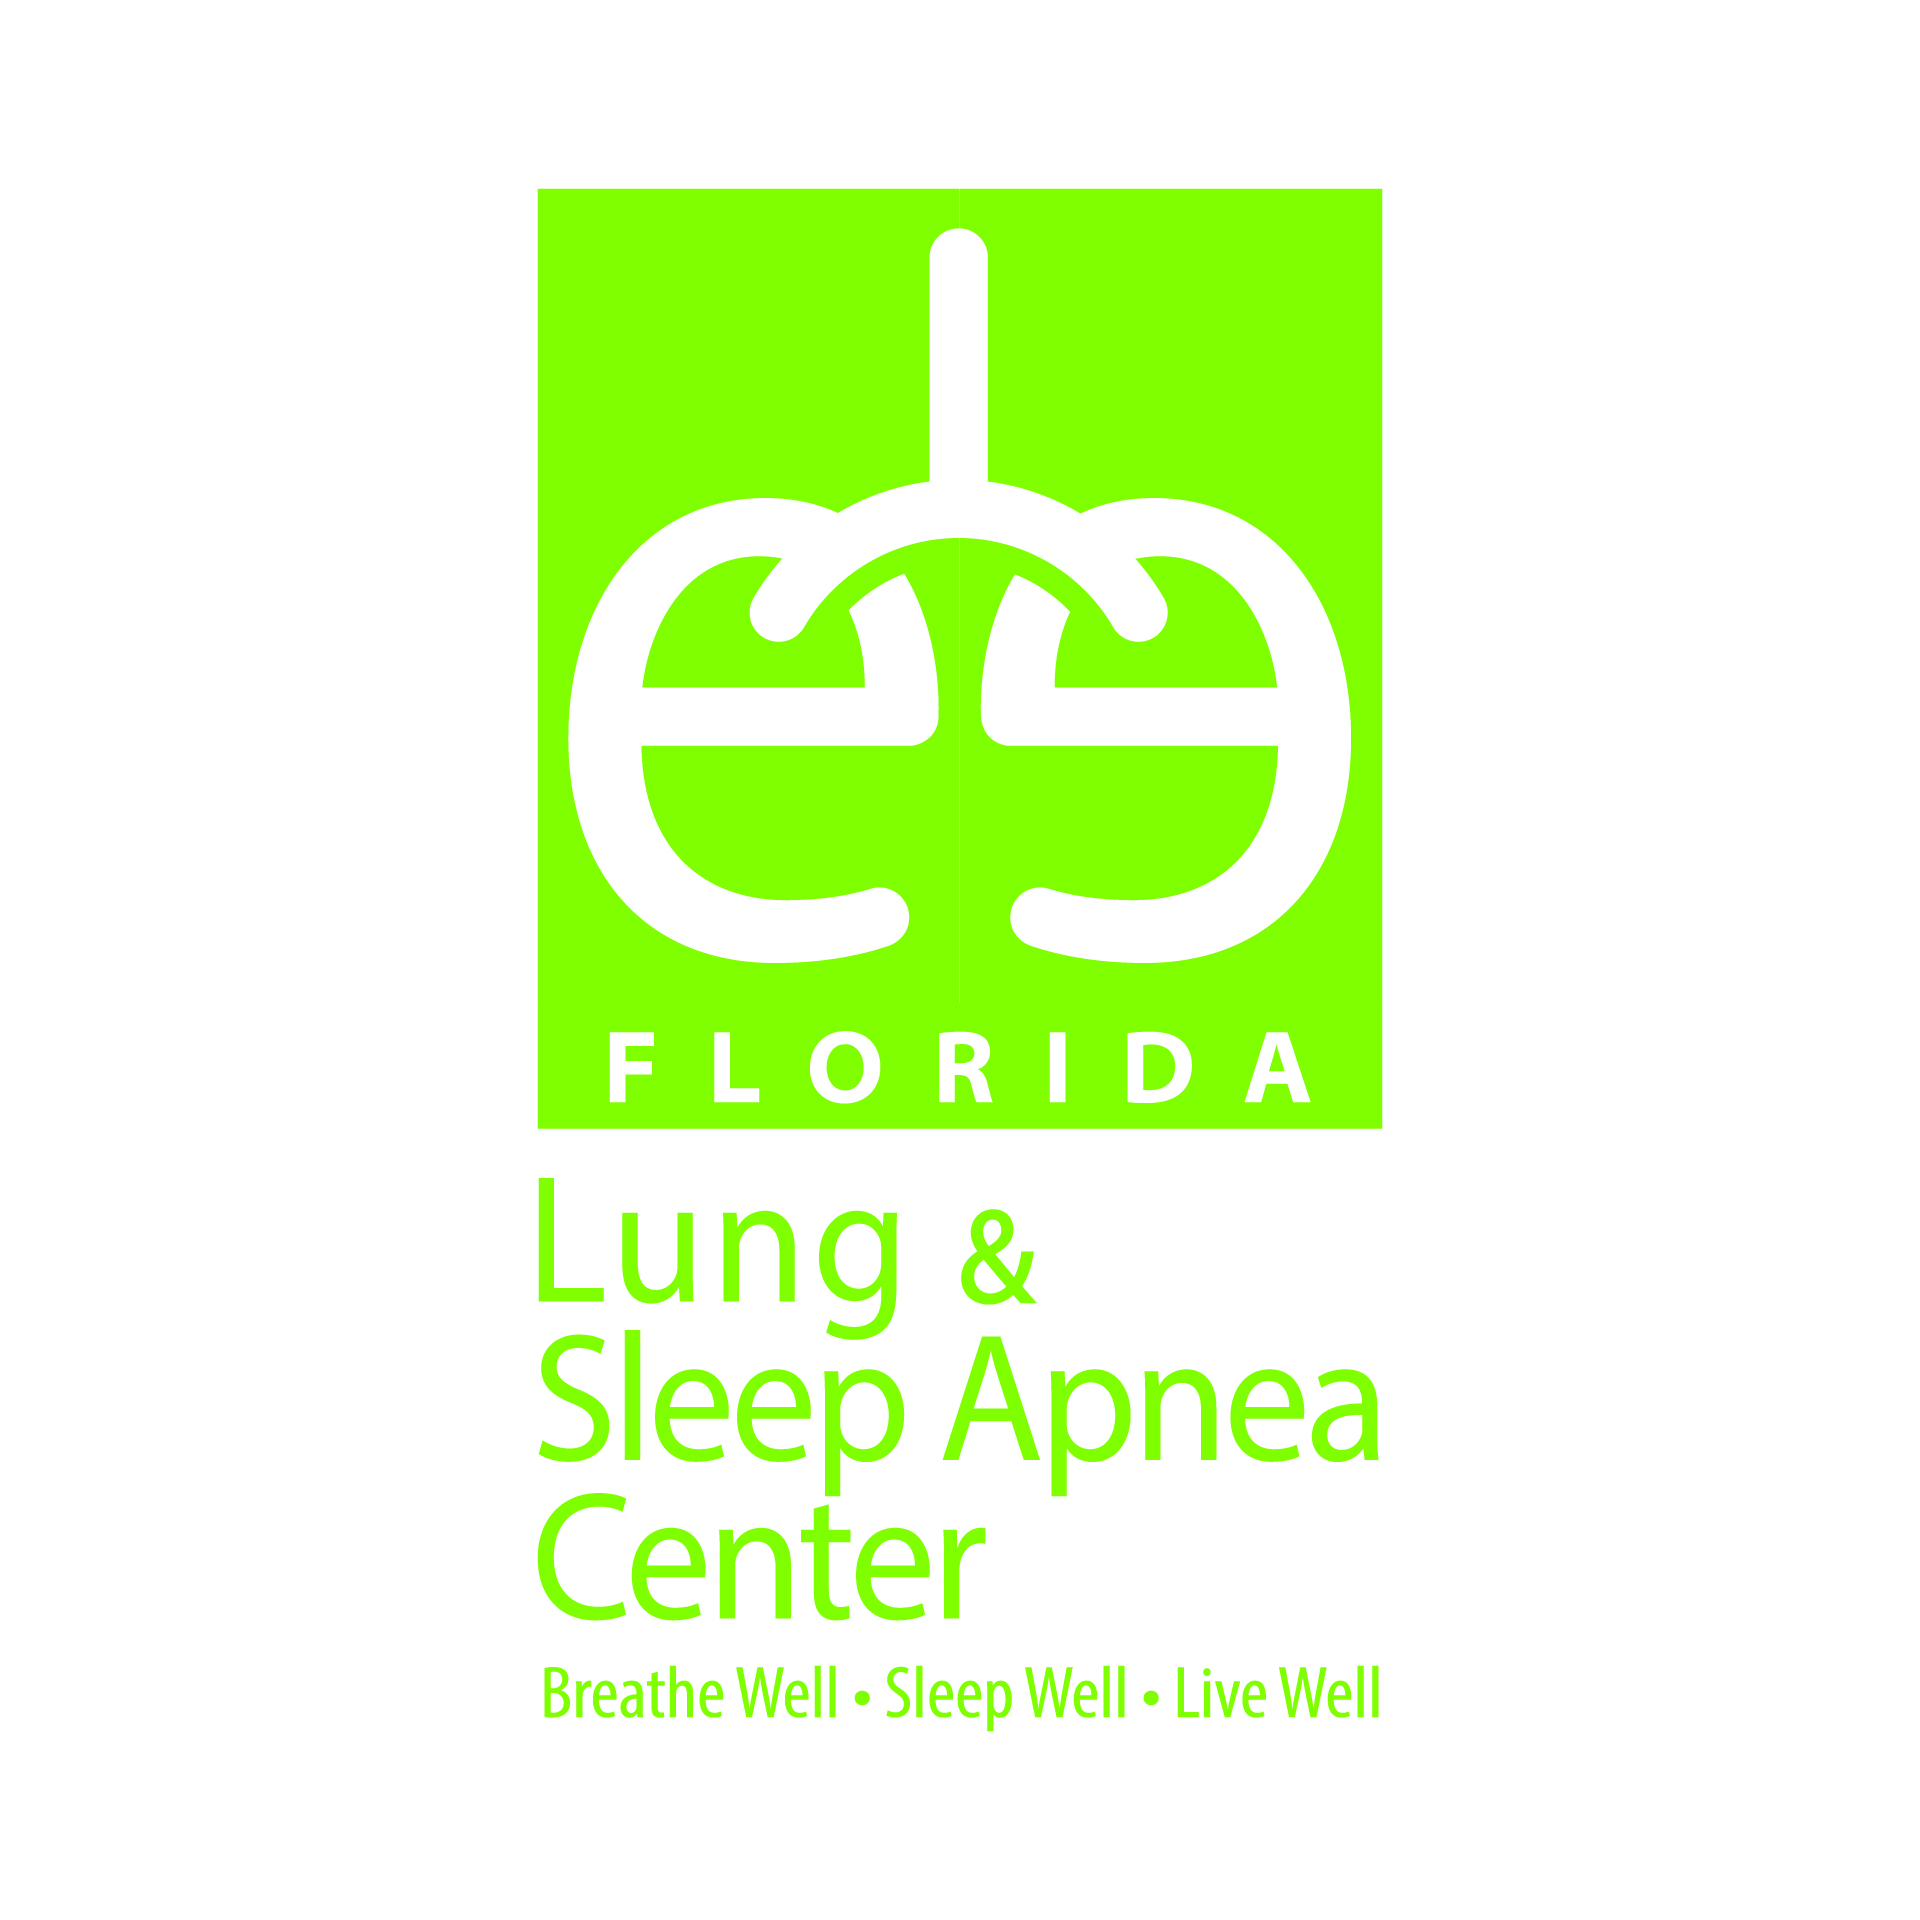 Diseño de Identidad Visual y Logotipo para la marca Lung & Sleep Apnea Center